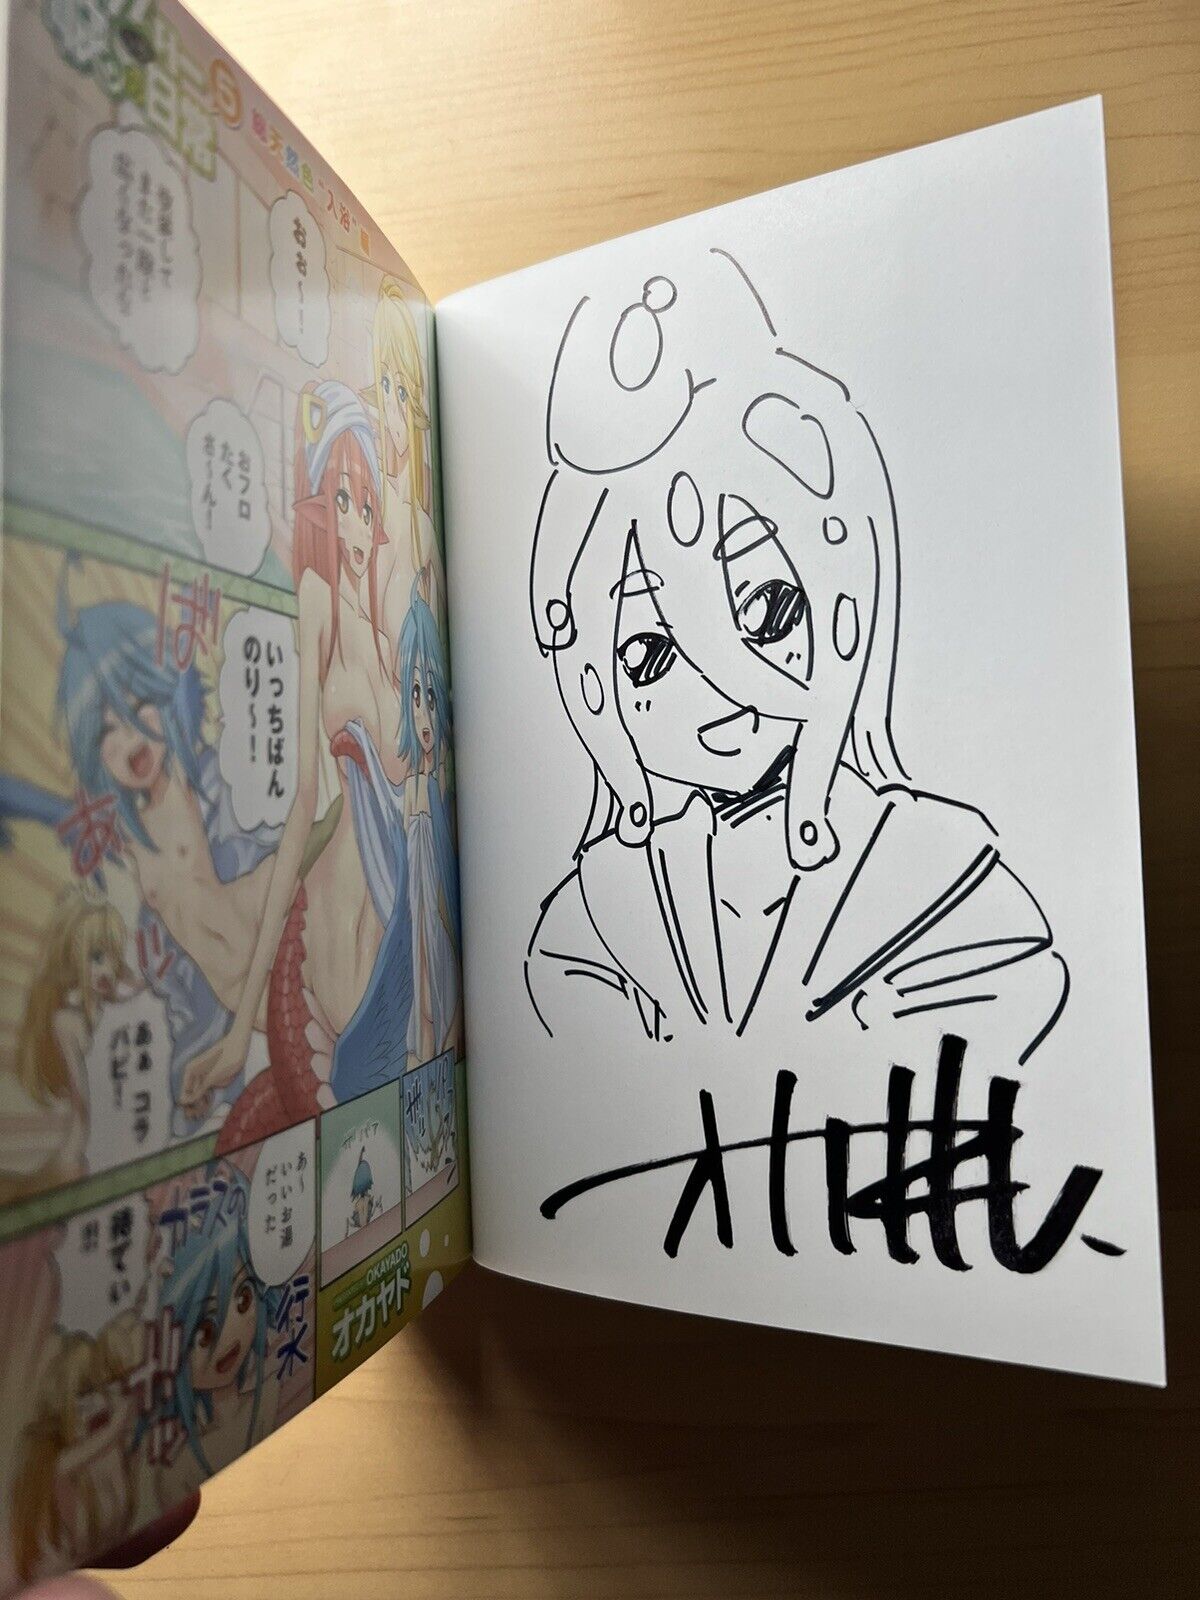 Monster Musume Okayado Signed Vol. 5 Autographed Manga Rare Doujinshi Autograph